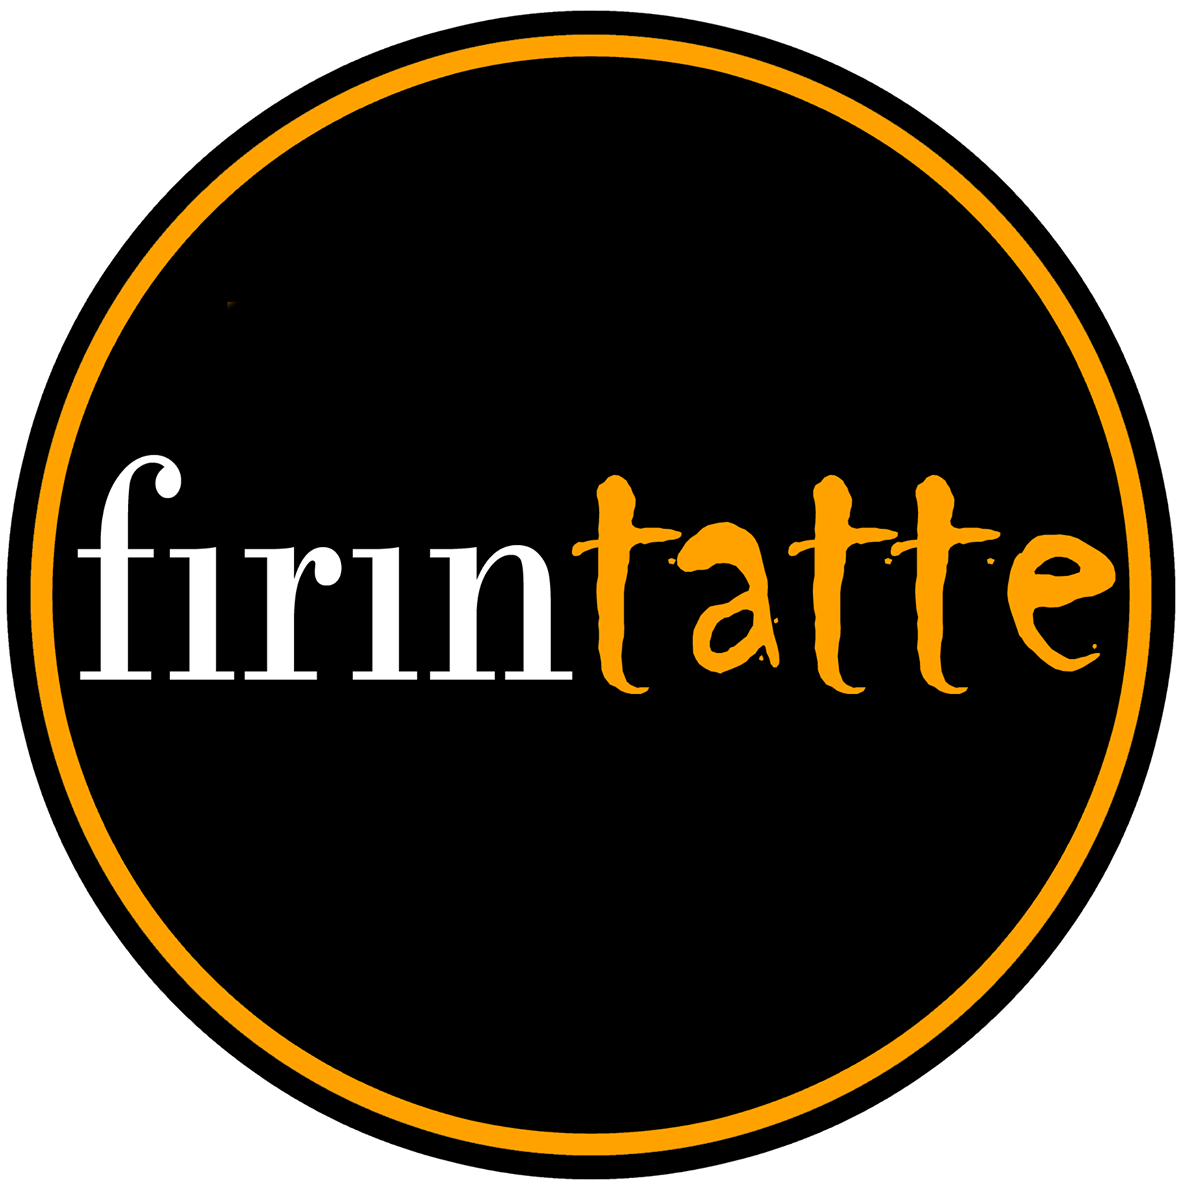 Fırın Tatte logo